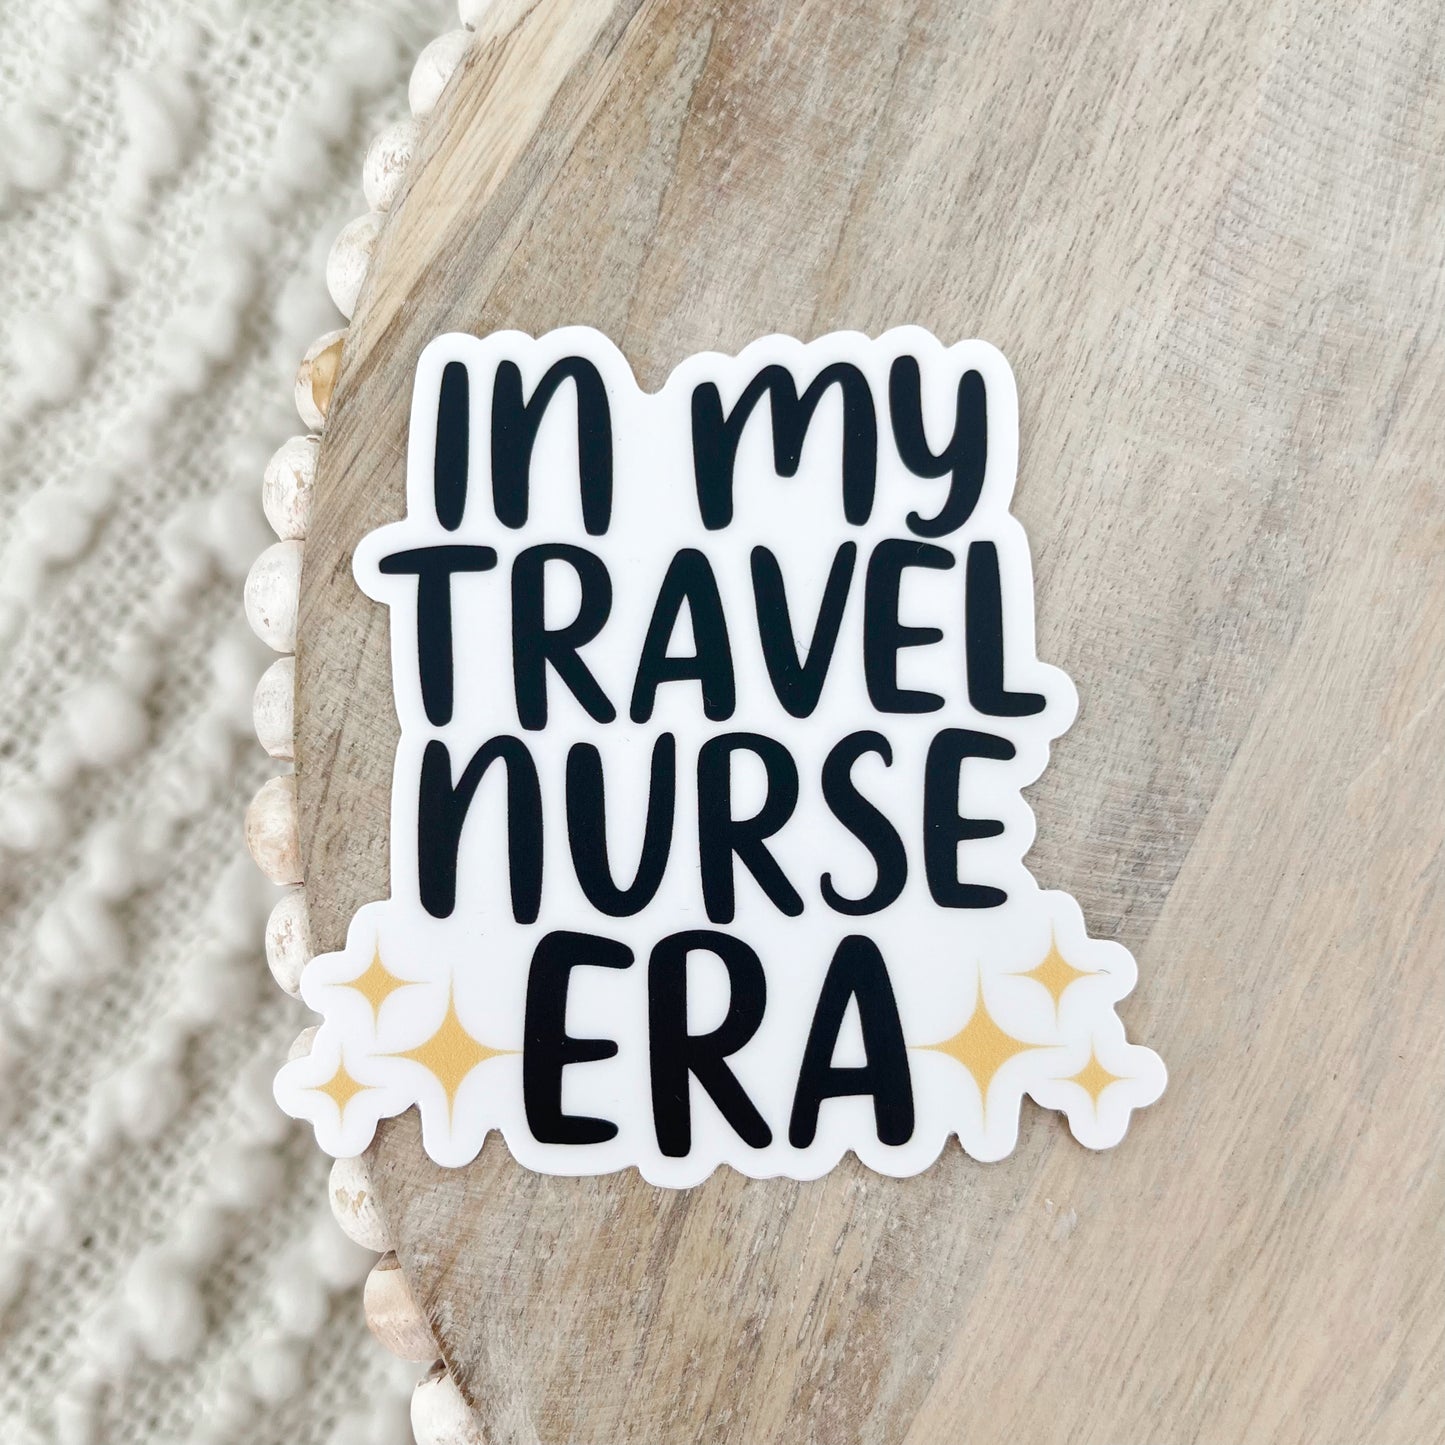 Travel Nurse Era Sticker